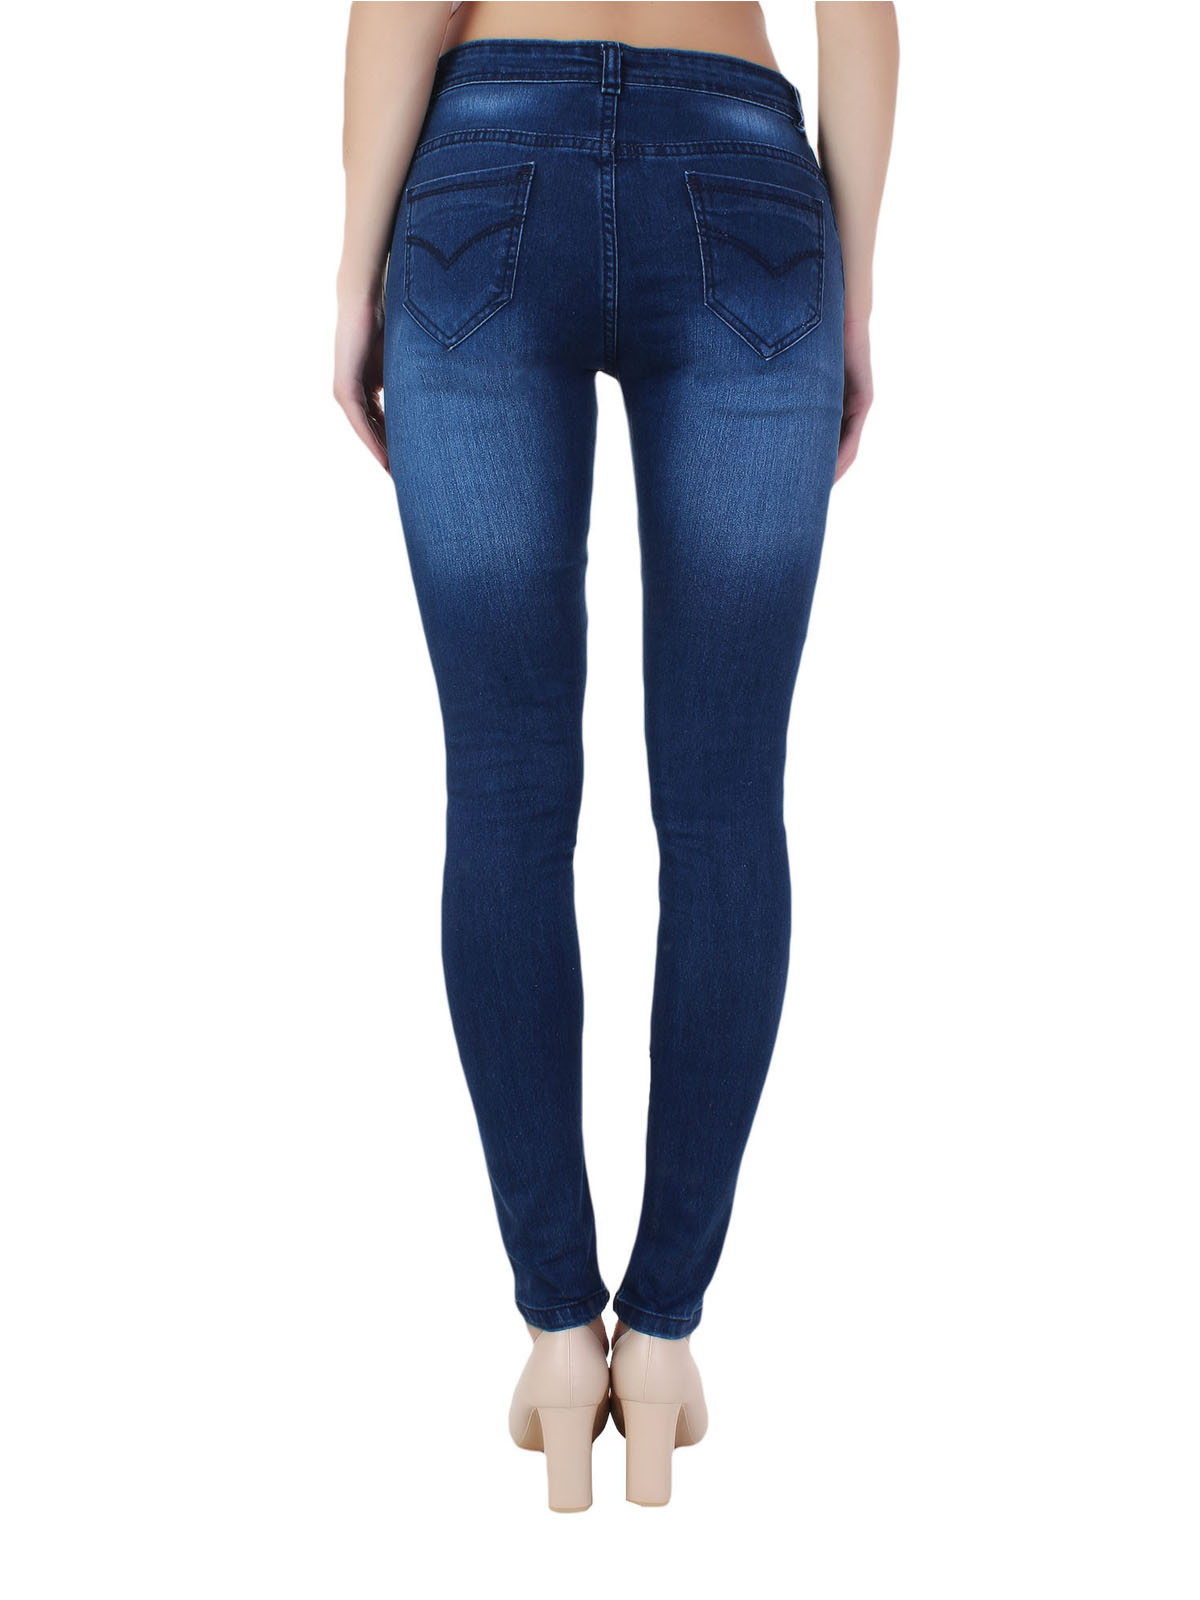 Buy Ansh Fashion Wear Women's Denim Jeans - Regular Fit - Knee Cut ...